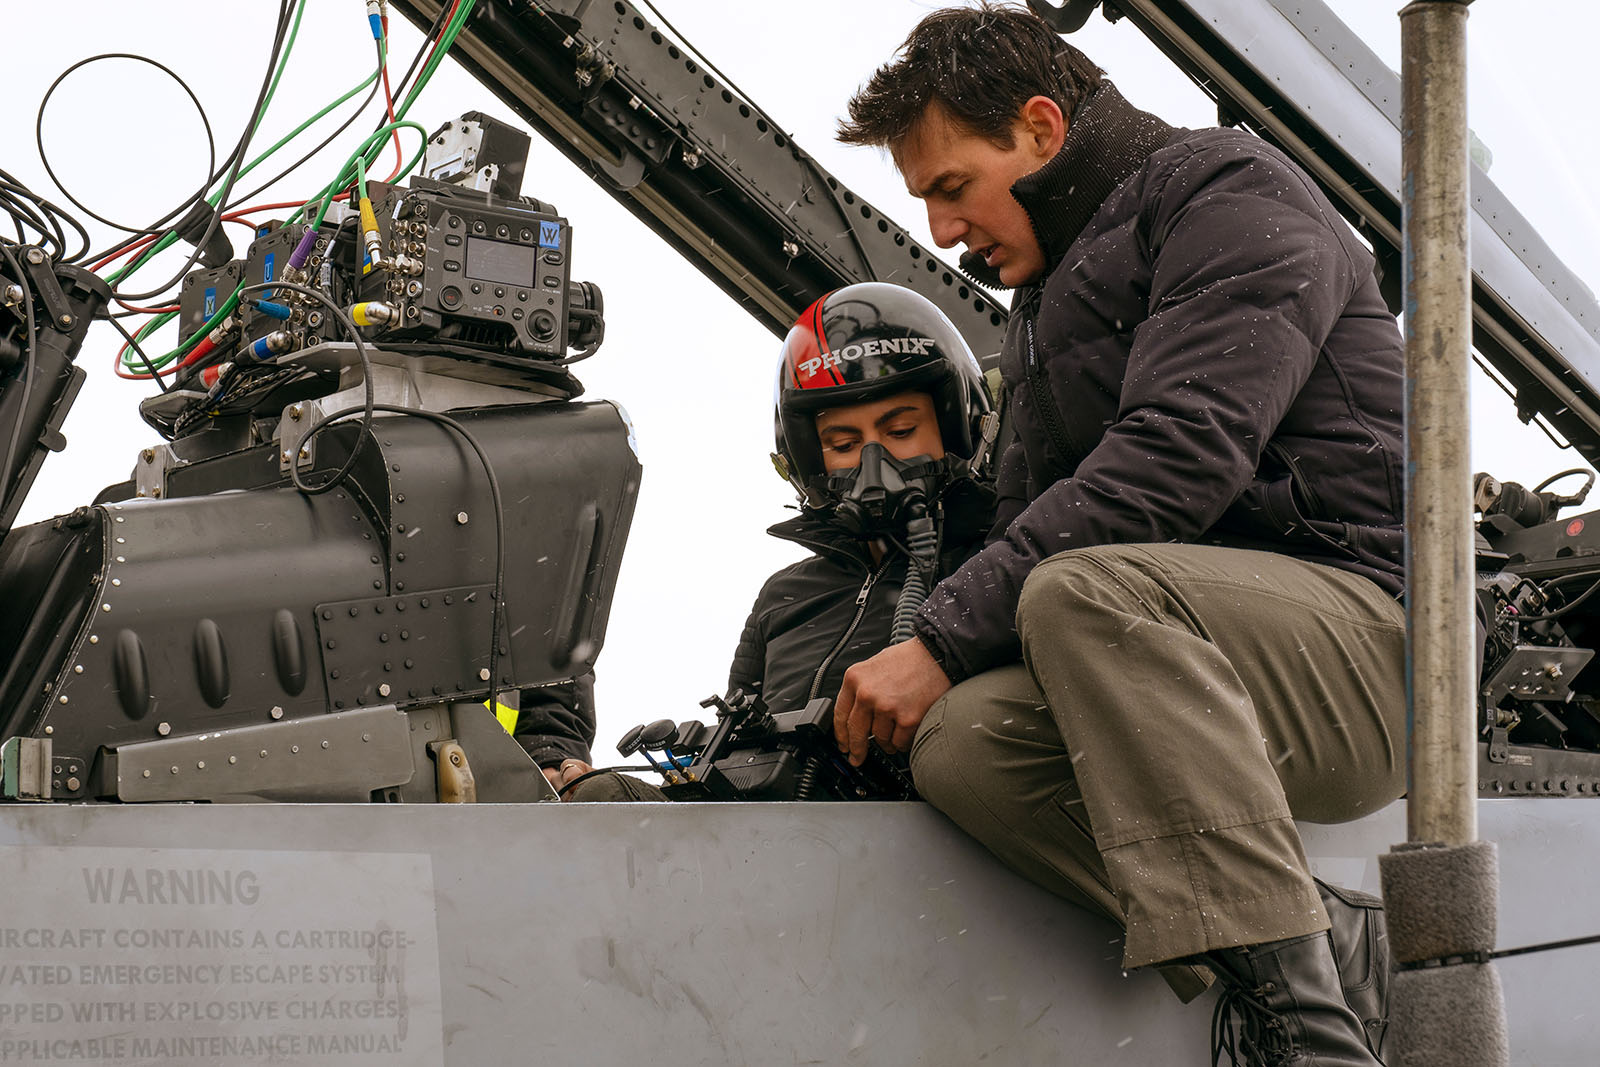 Tom Cruise on set of Top Gun: Maverick. Image © Paramount Pictures